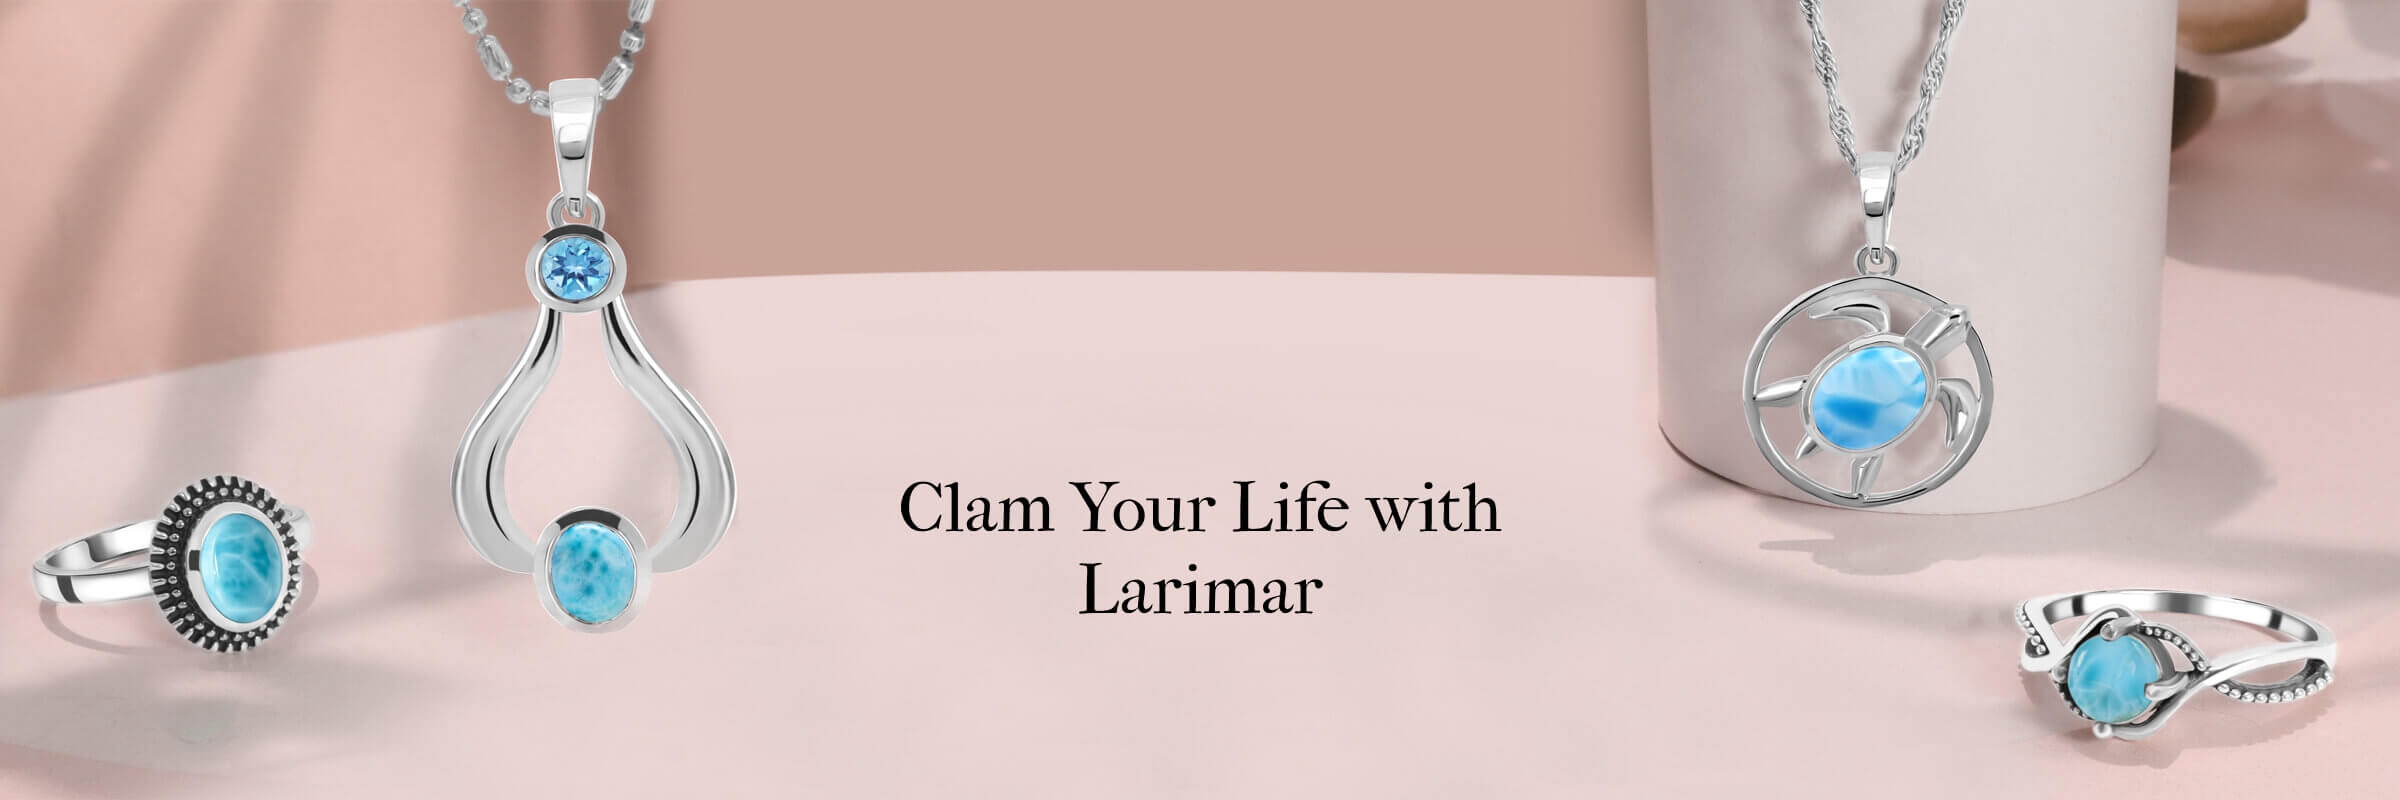 Healing properties of Larimar